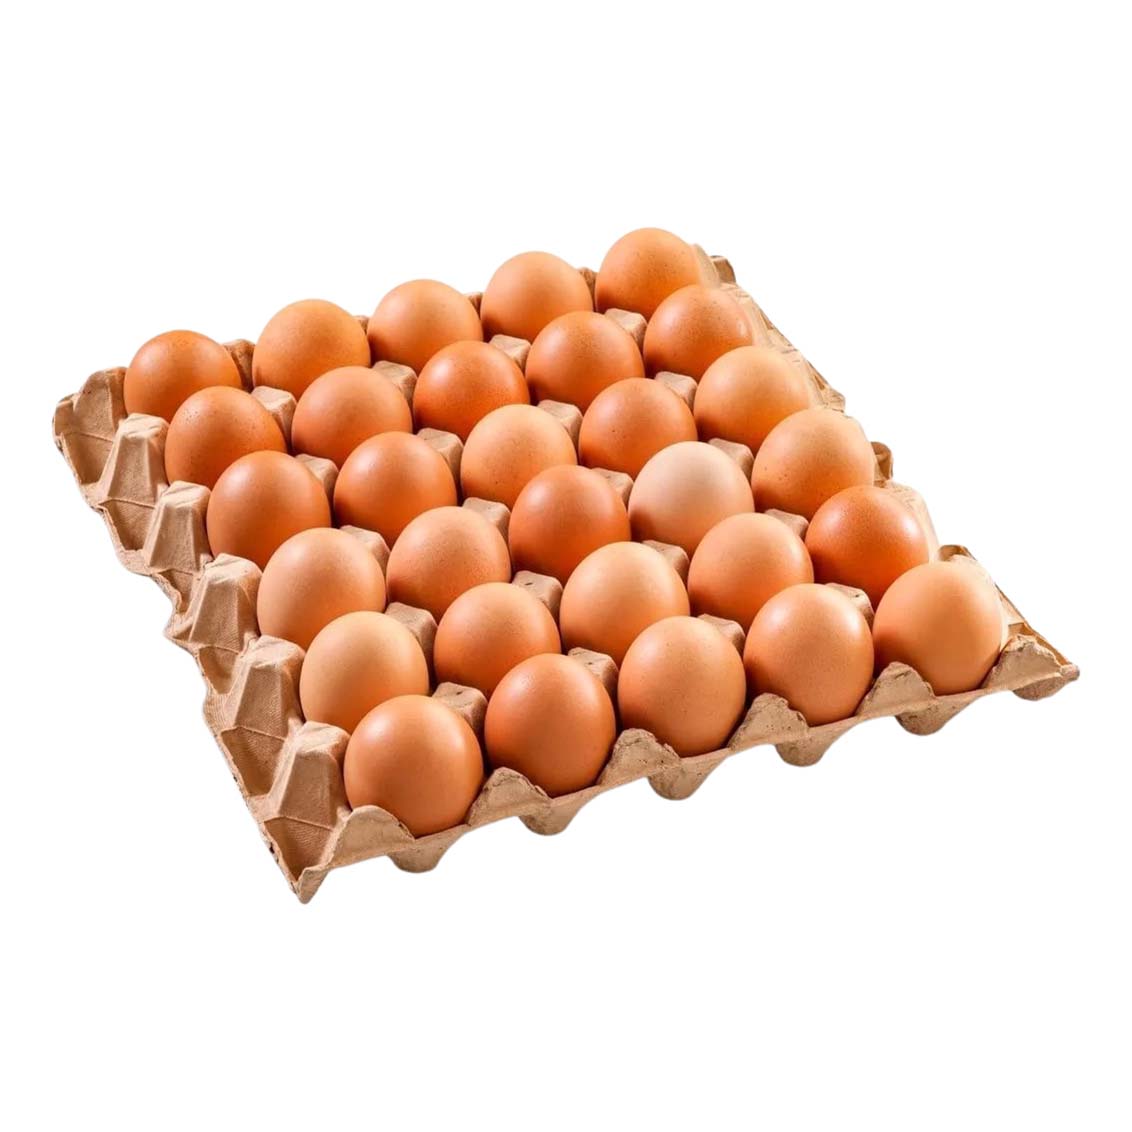 Яйцо куриное пищевое С 2, 30 шт.